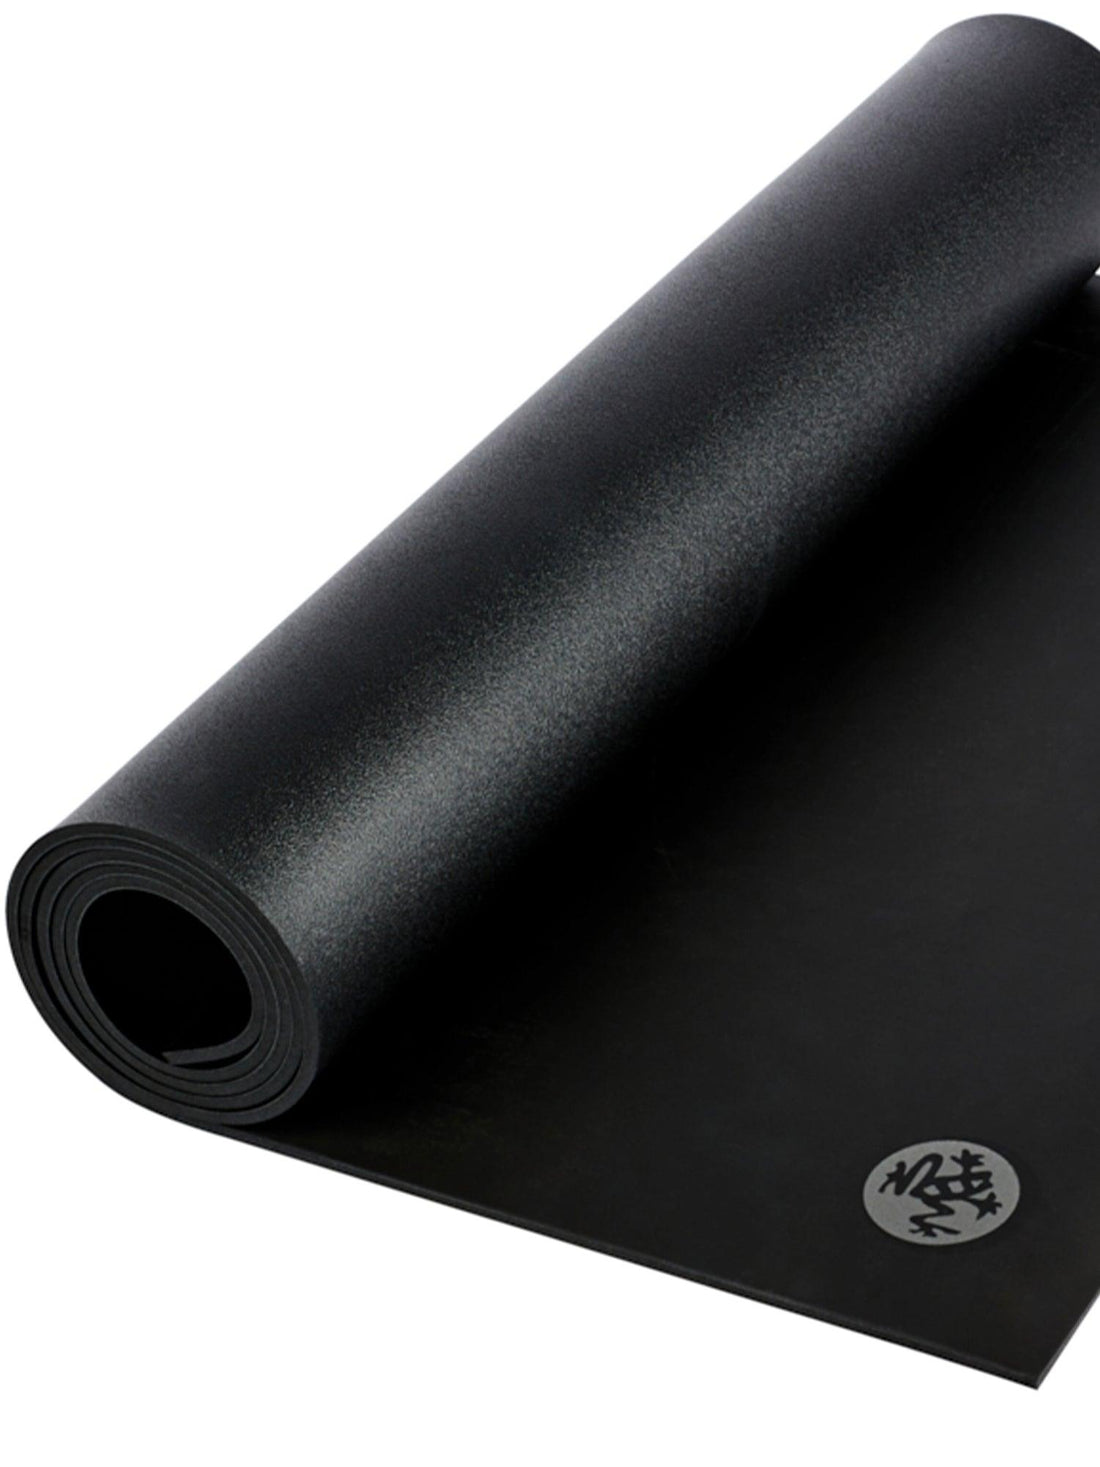 よろずやマルシェ本店  Manduka マンドゥカ GRP Lite Hot Yogamat ジーアールピー ライト ホットヨガマット Black  ブラック 4mm: インテリア・家具・収納 －食品・日用品から百均まで個人向け通販